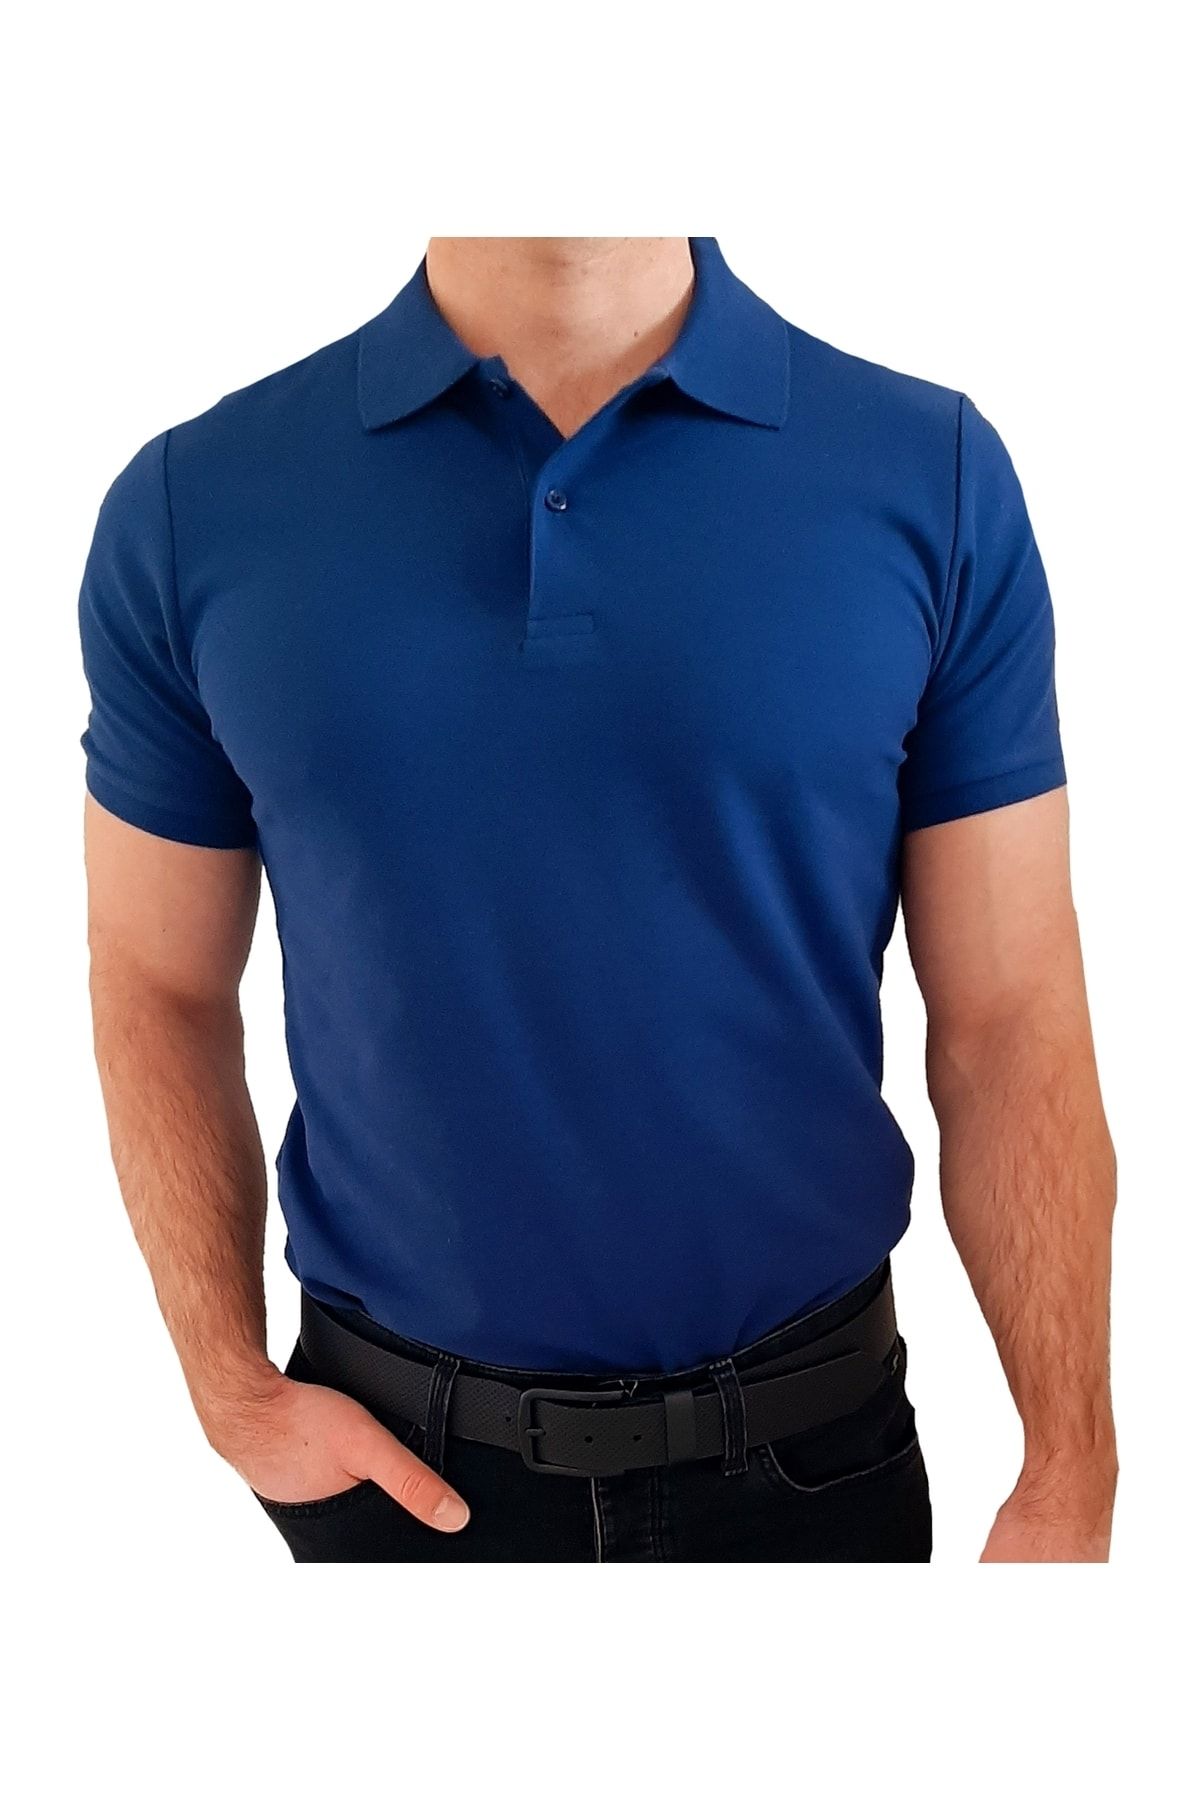 uniformax Lacivert Erkek Polo Yaka Tişört %100 Pamuk 10 Farklı Renk